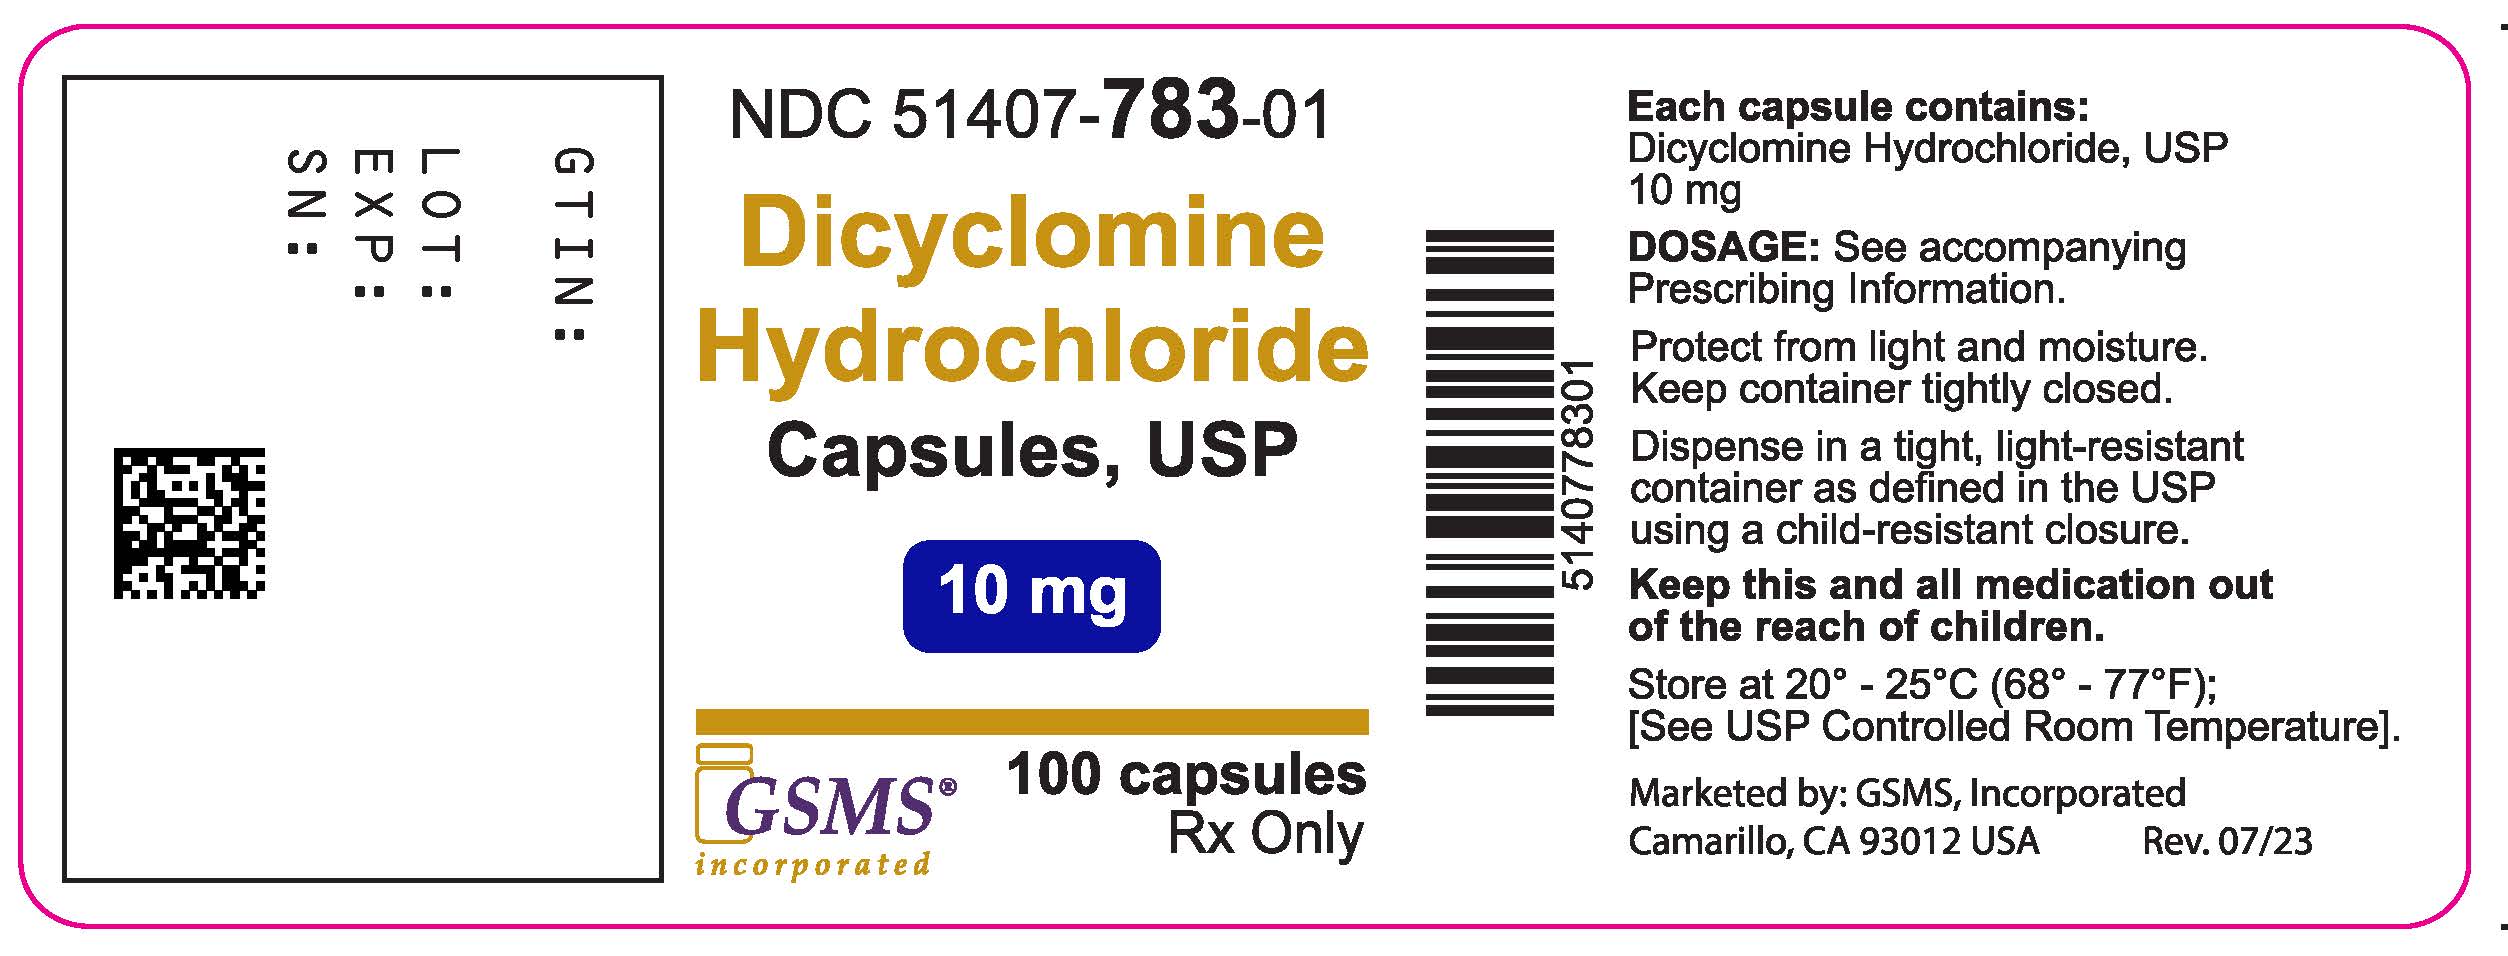 Dicyclomine HCl Caps - 51407-783-01 - 100ct - Rev0723.jpg